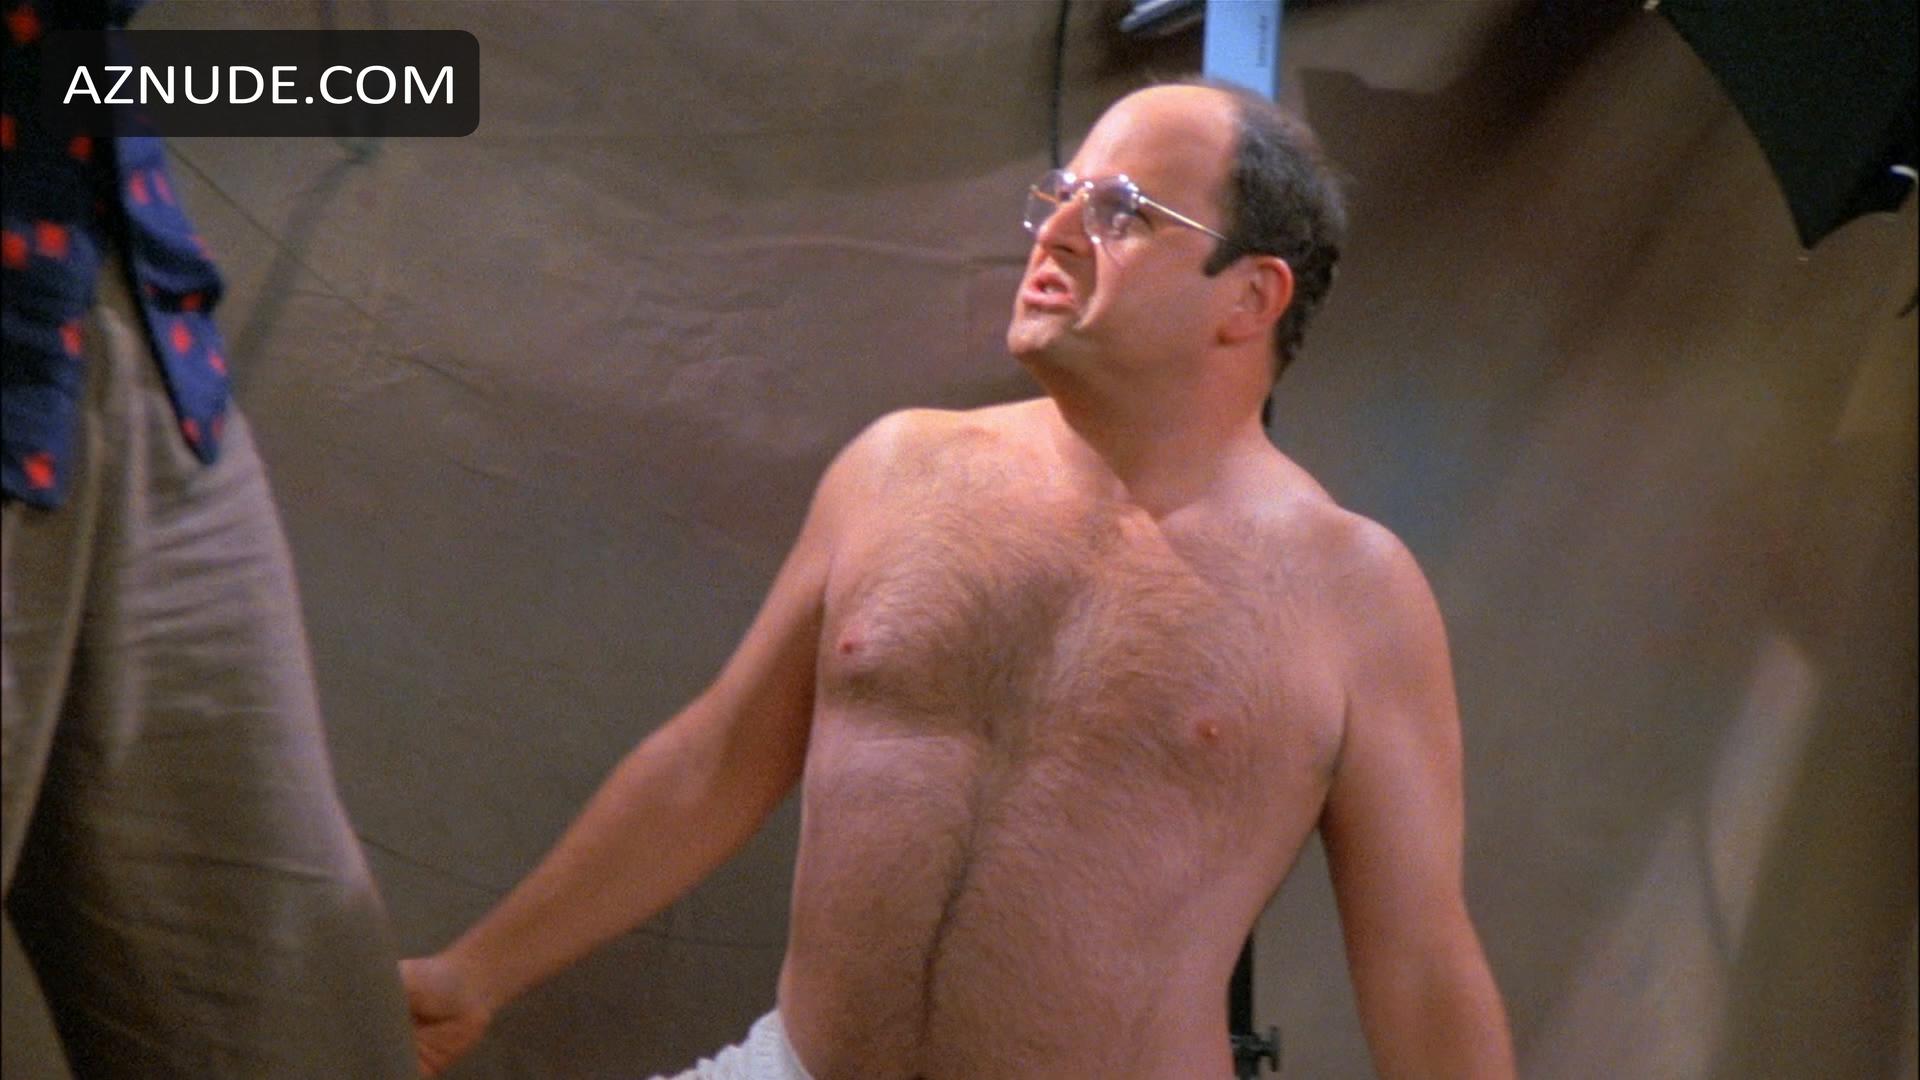 Seinfeld Nude Scenes Aznude Men The Best Porn Website